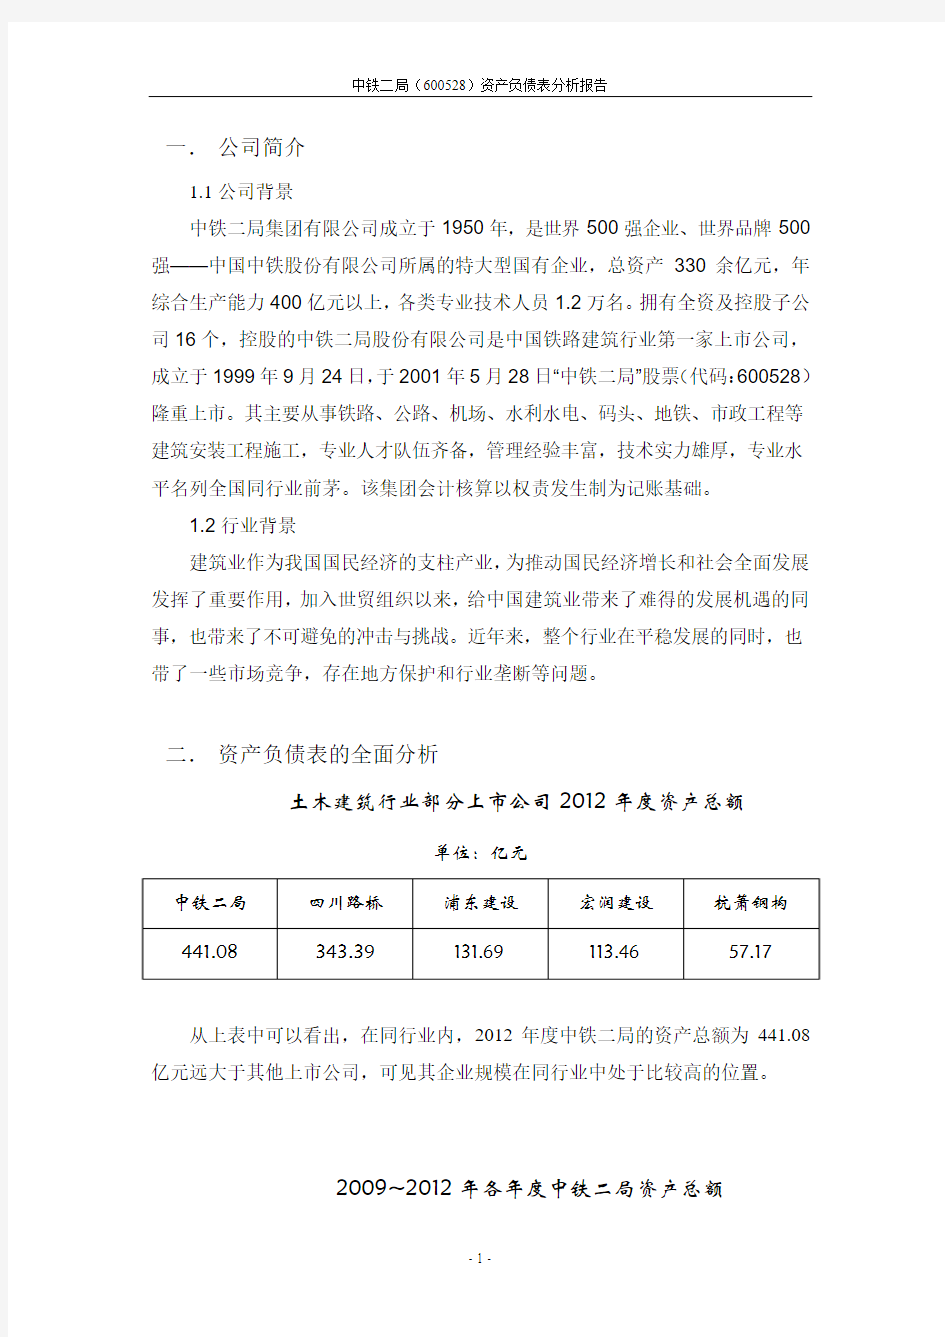 中铁二局资产负债表分析报告